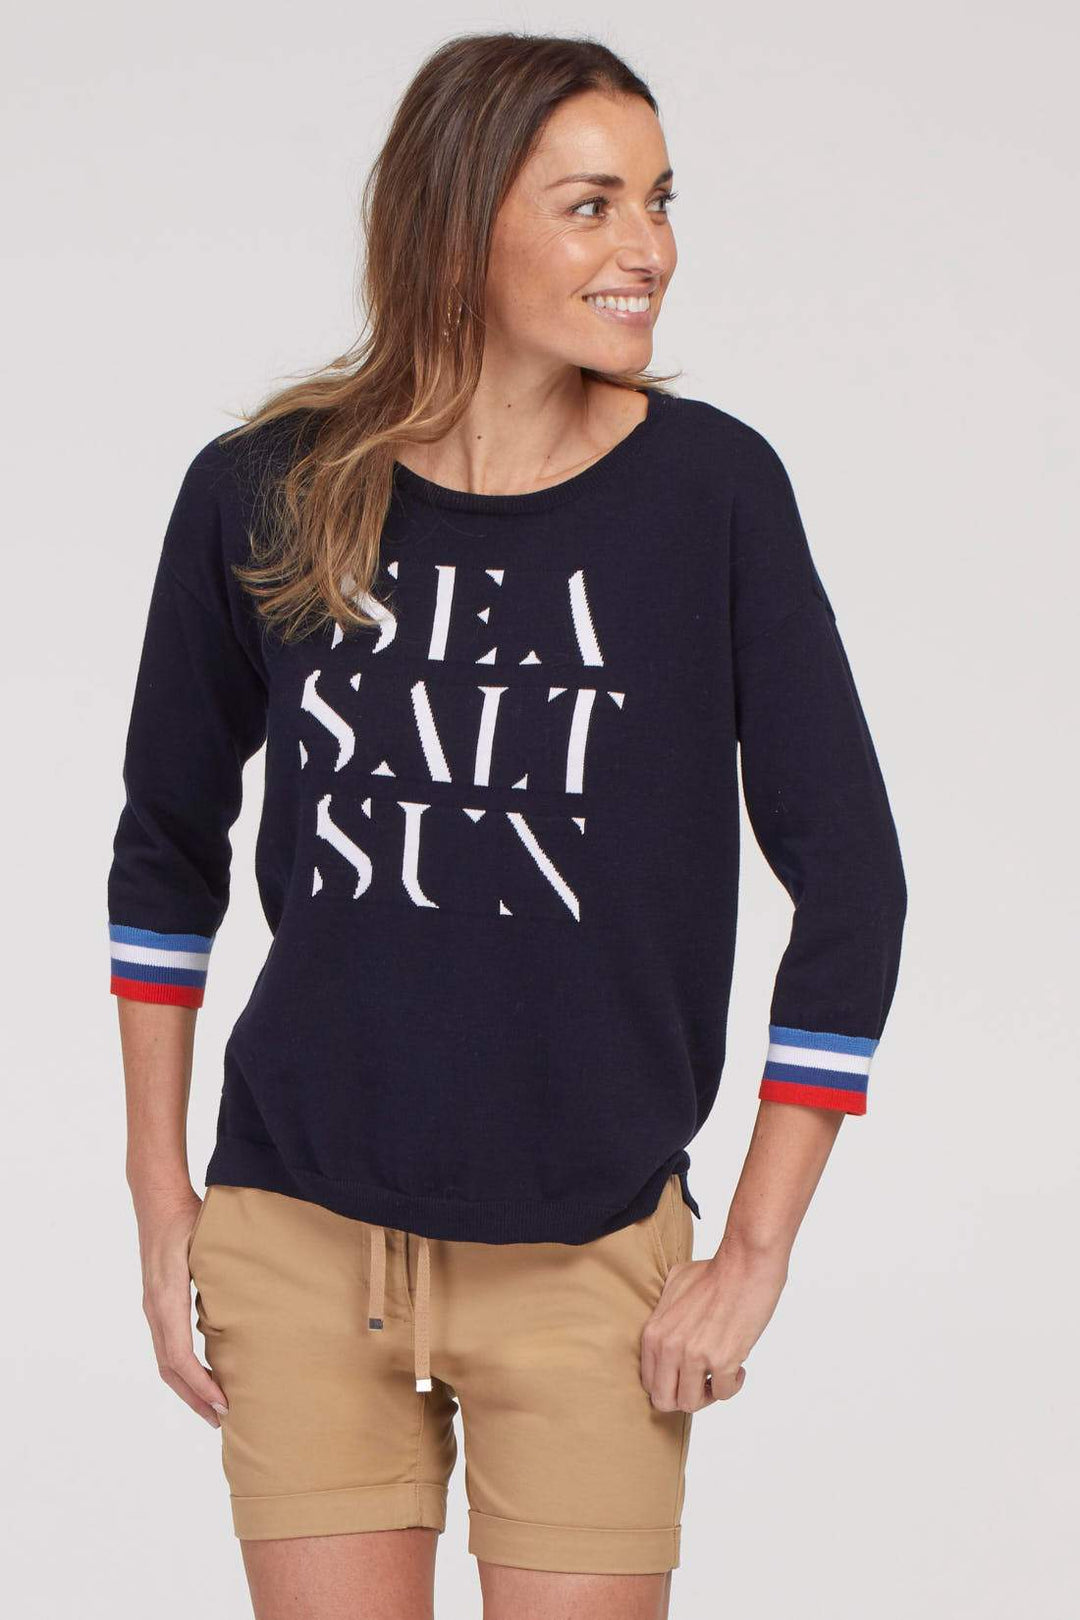 Sea Sun Salt Sweater